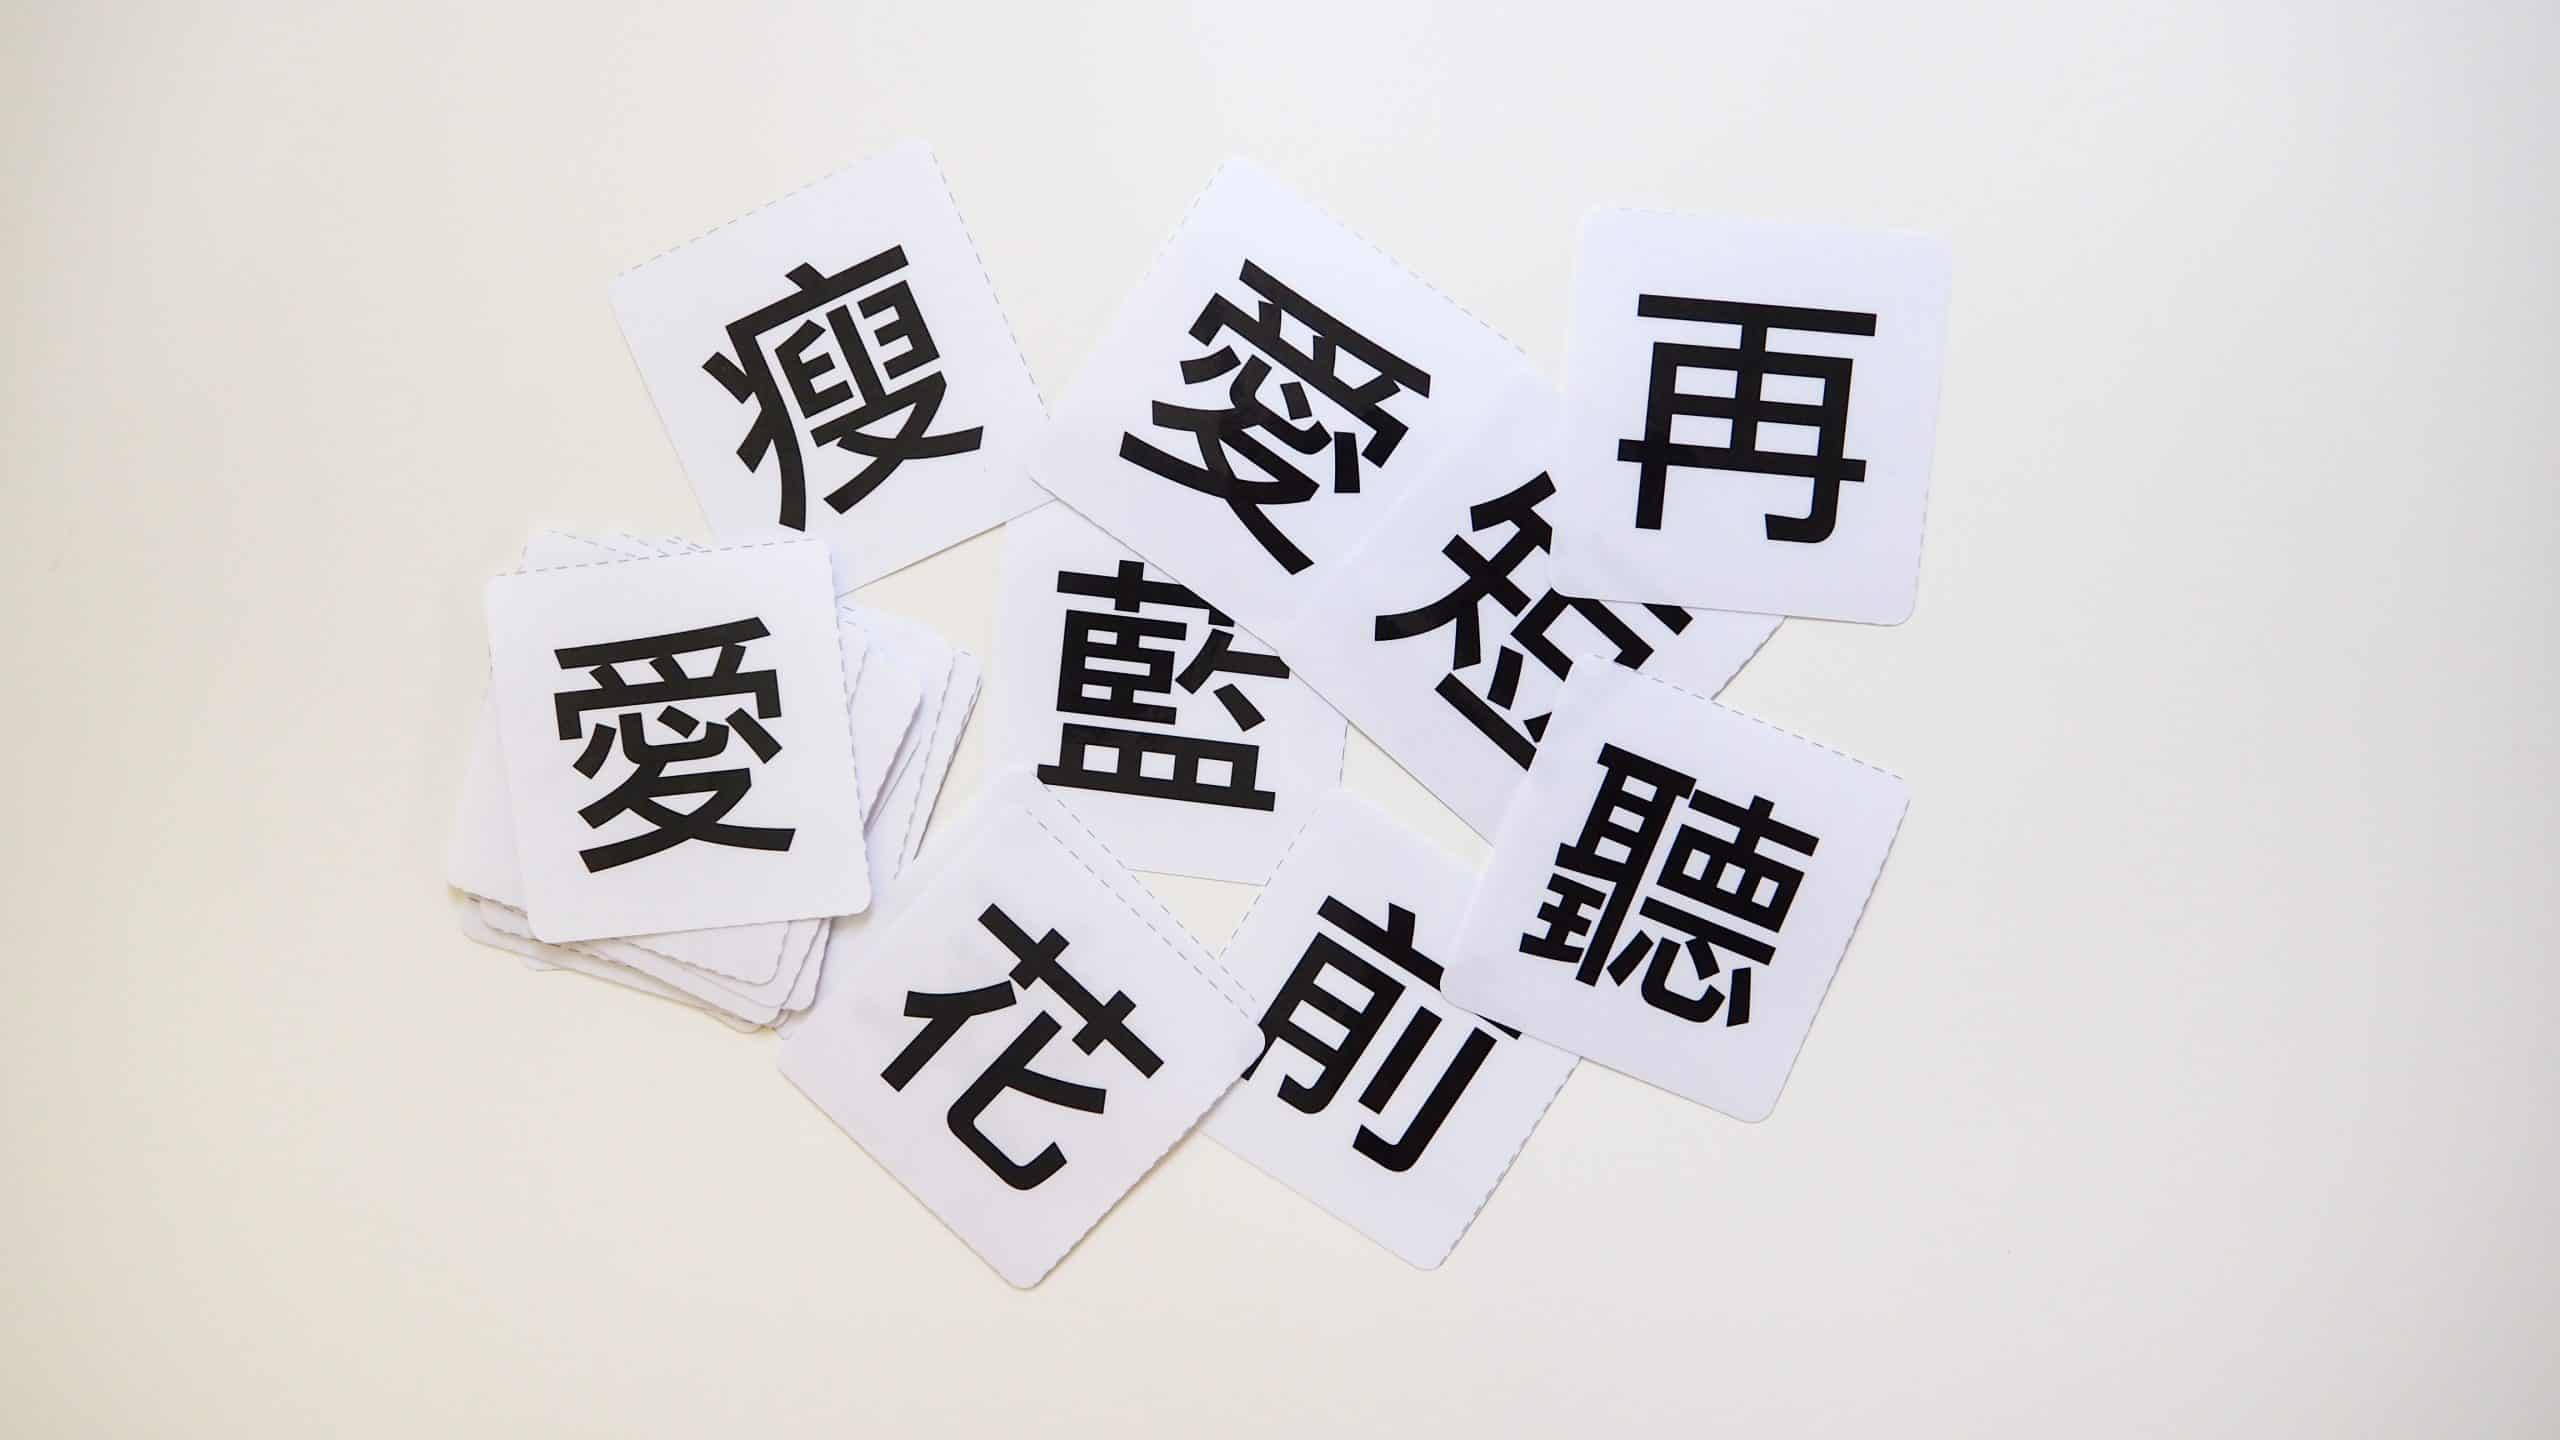 自製中文字卡 免費 中文字卡圖檔 中文認字卡